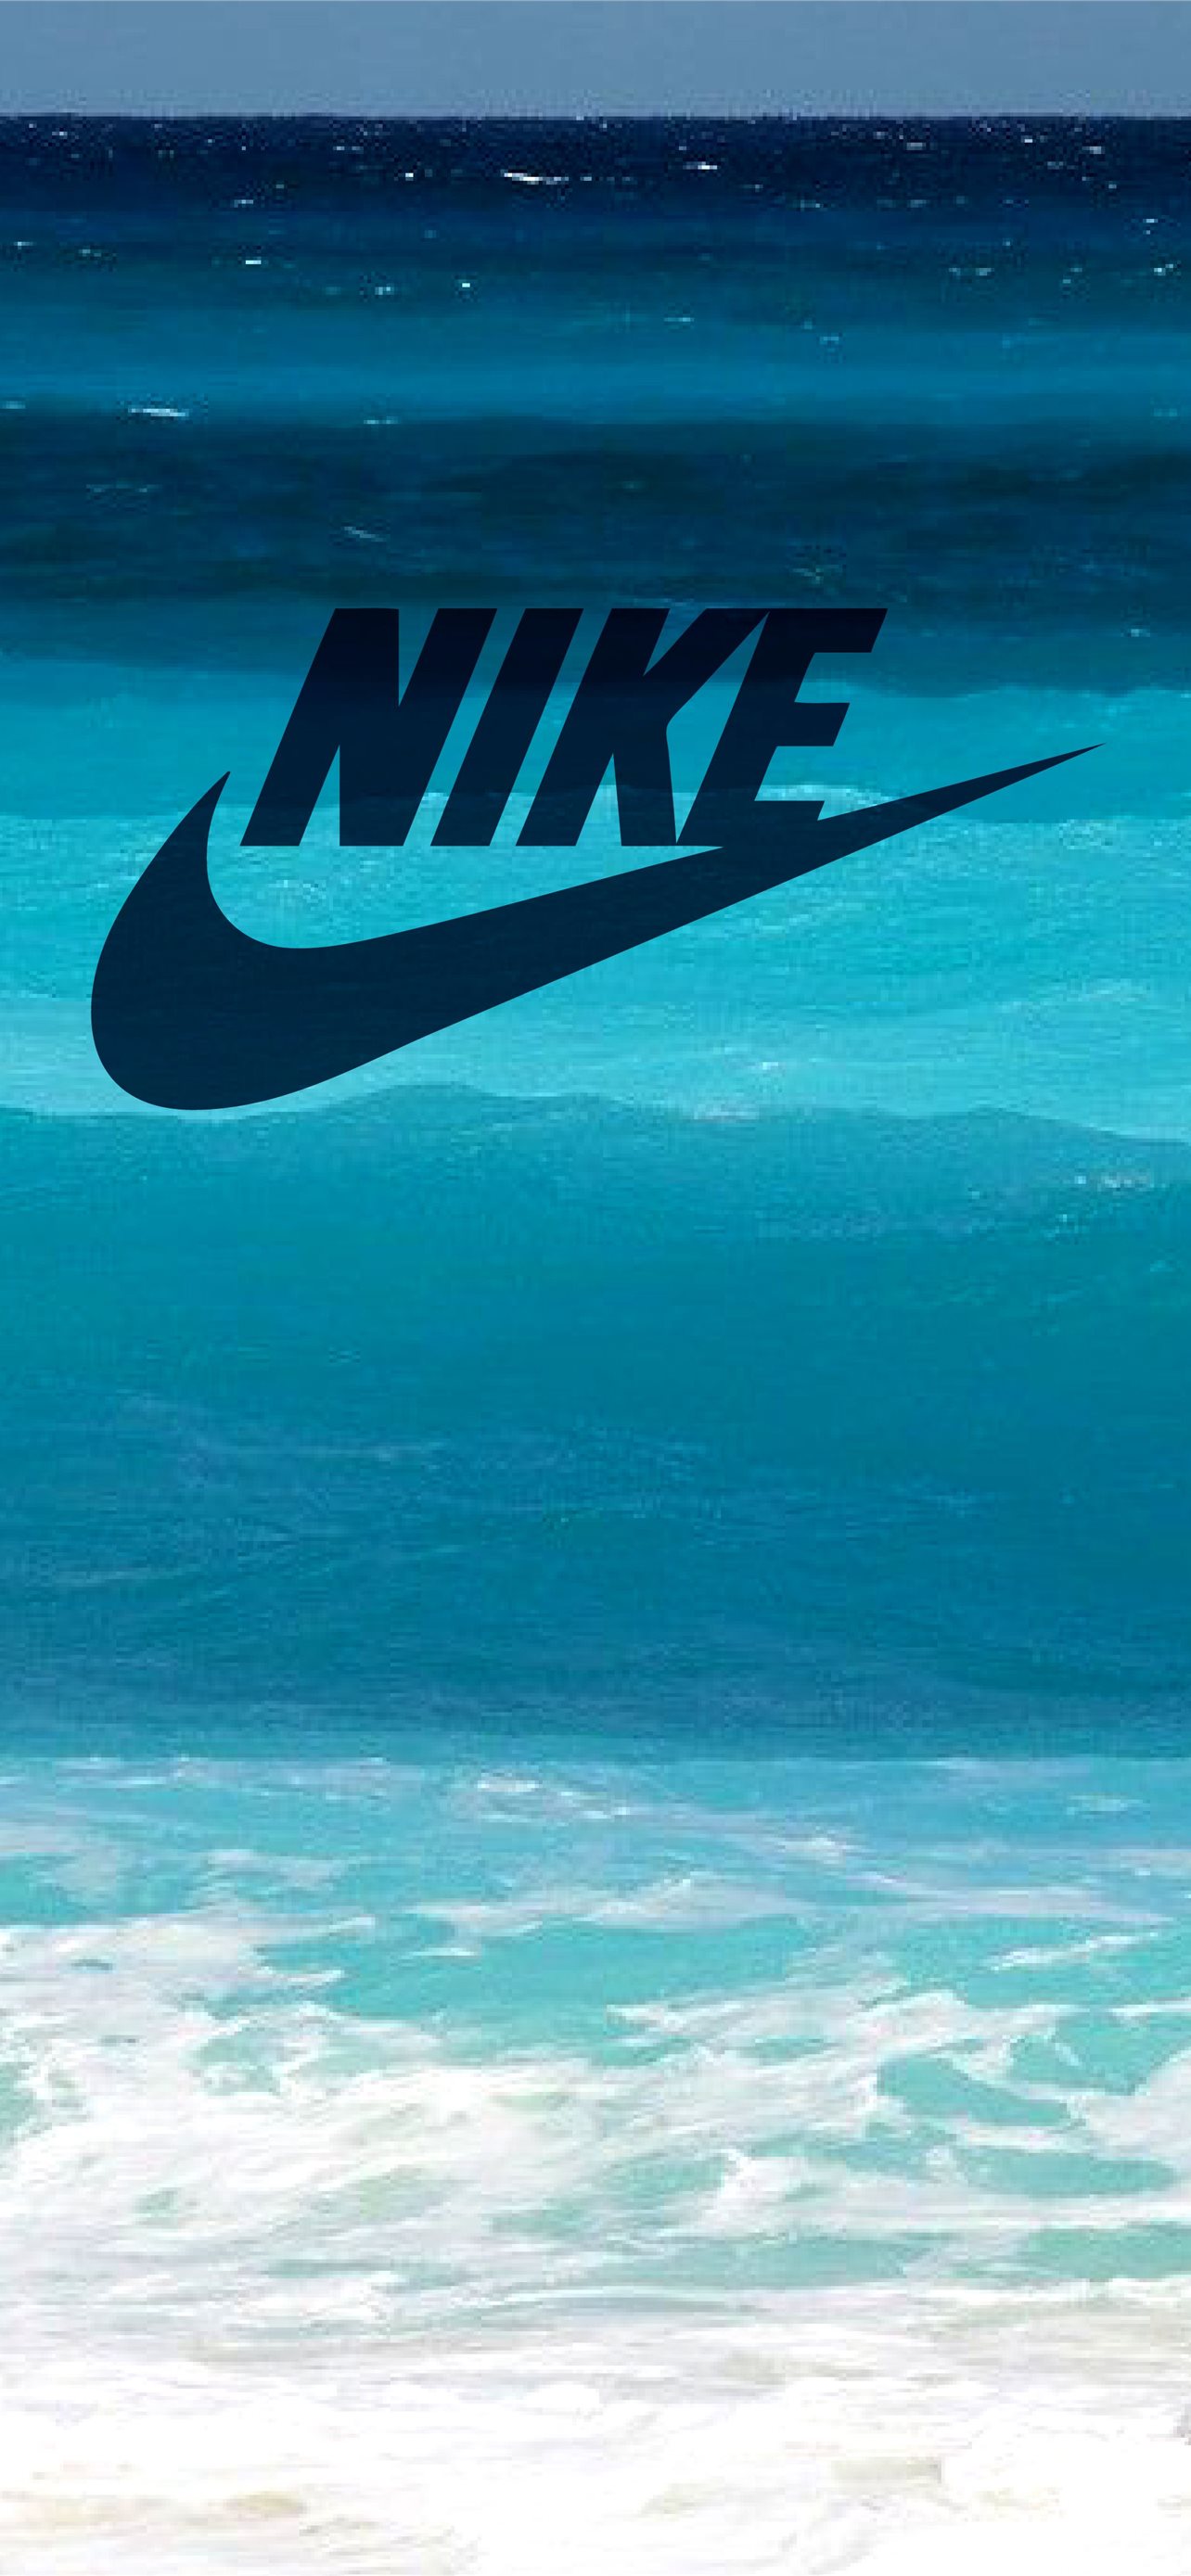 Nike: Chào mừng bạn đến với thế giới của Nike - một thương hiệu thể thao danh tiếng với những sản phẩm chất lượng và đầy phong cách. Hãy chiêm ngưỡng hình ảnh liên quan đến Nike và cảm nhận sự đẳng cấp của thương hiệu này. 